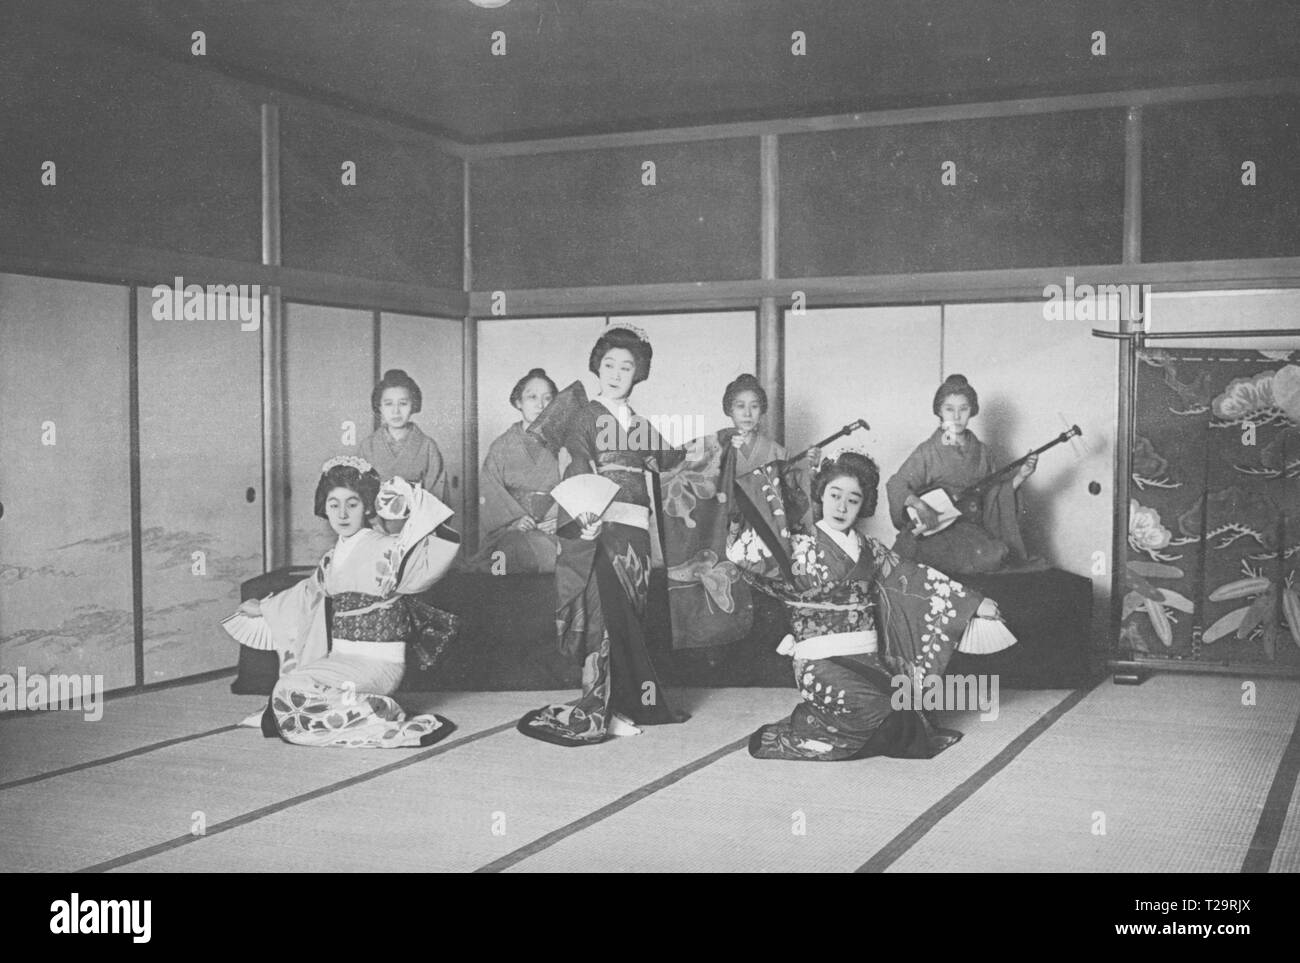 Illustration d'un groupe de femmes dans une tenue de Geisha l'exécution d'une danse traditionnelle japonaise avec des fans de papier, 1914. À partir de la Bibliothèque publique de New York. () Banque D'Images